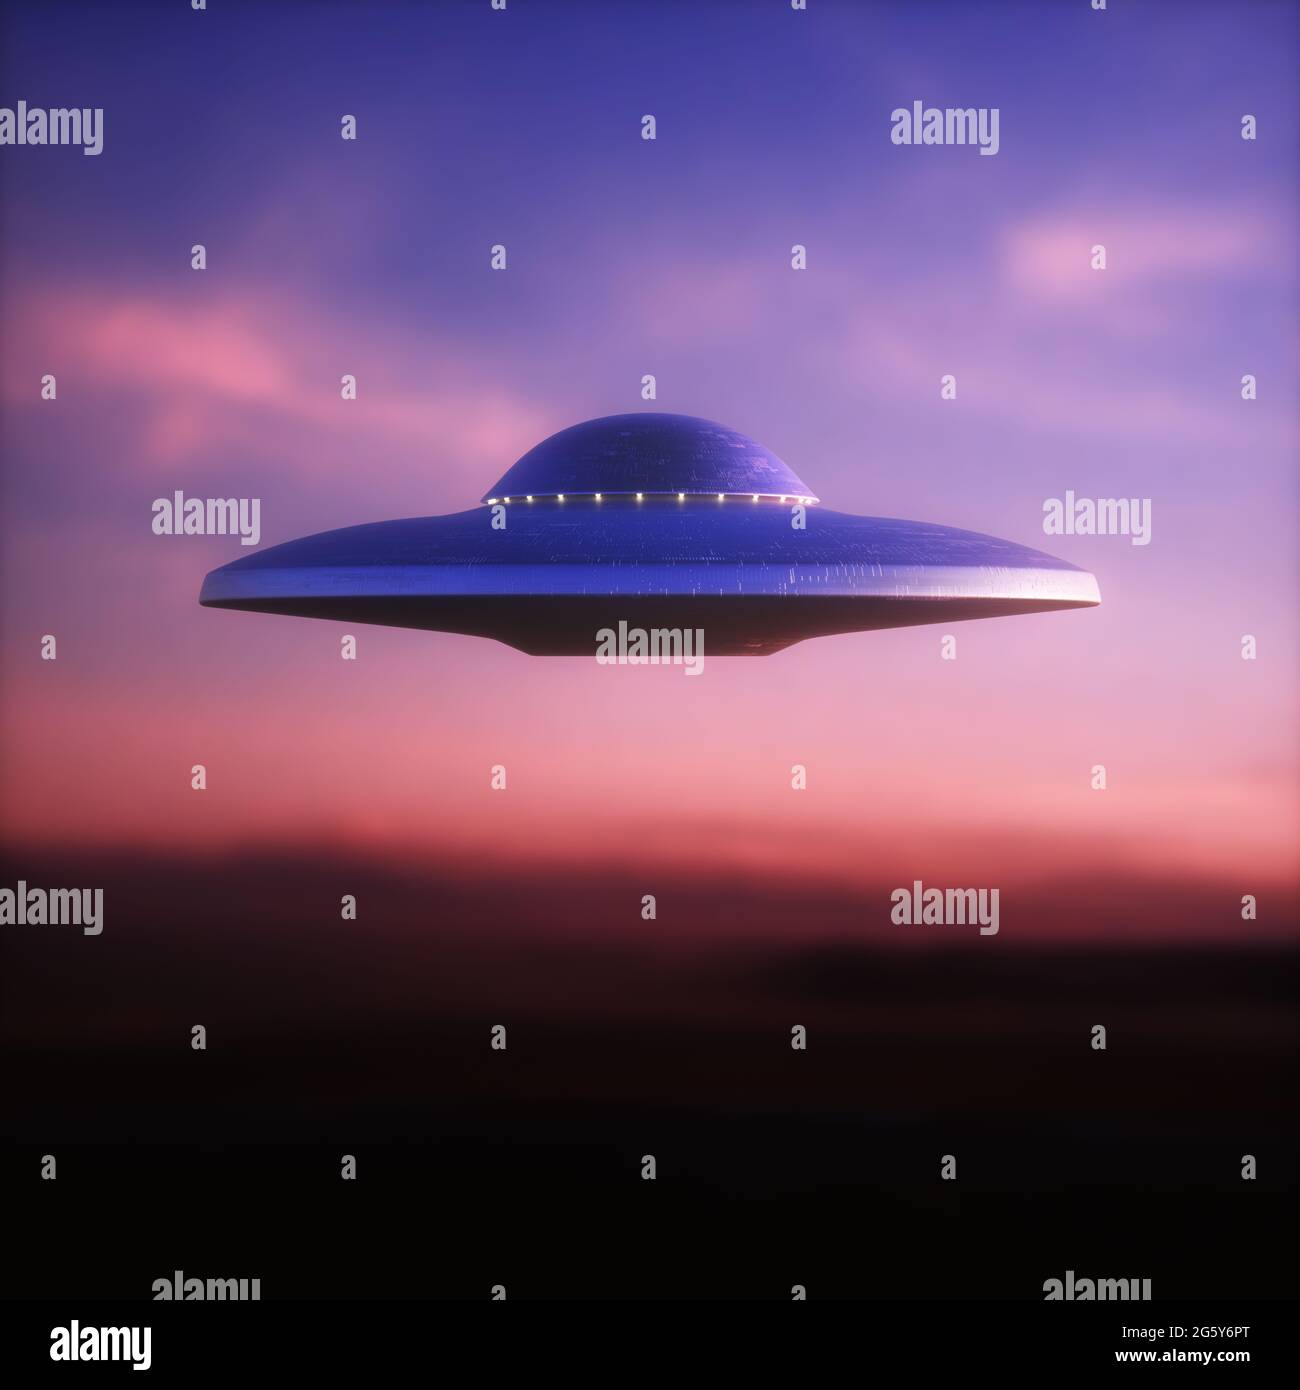 Nicht identifiziertes fliegendes Objekt - UFO. Science Fiction, 3D Illustration Konzept der Ufologie. Beschneidungspfad Enthalten. Stockfoto